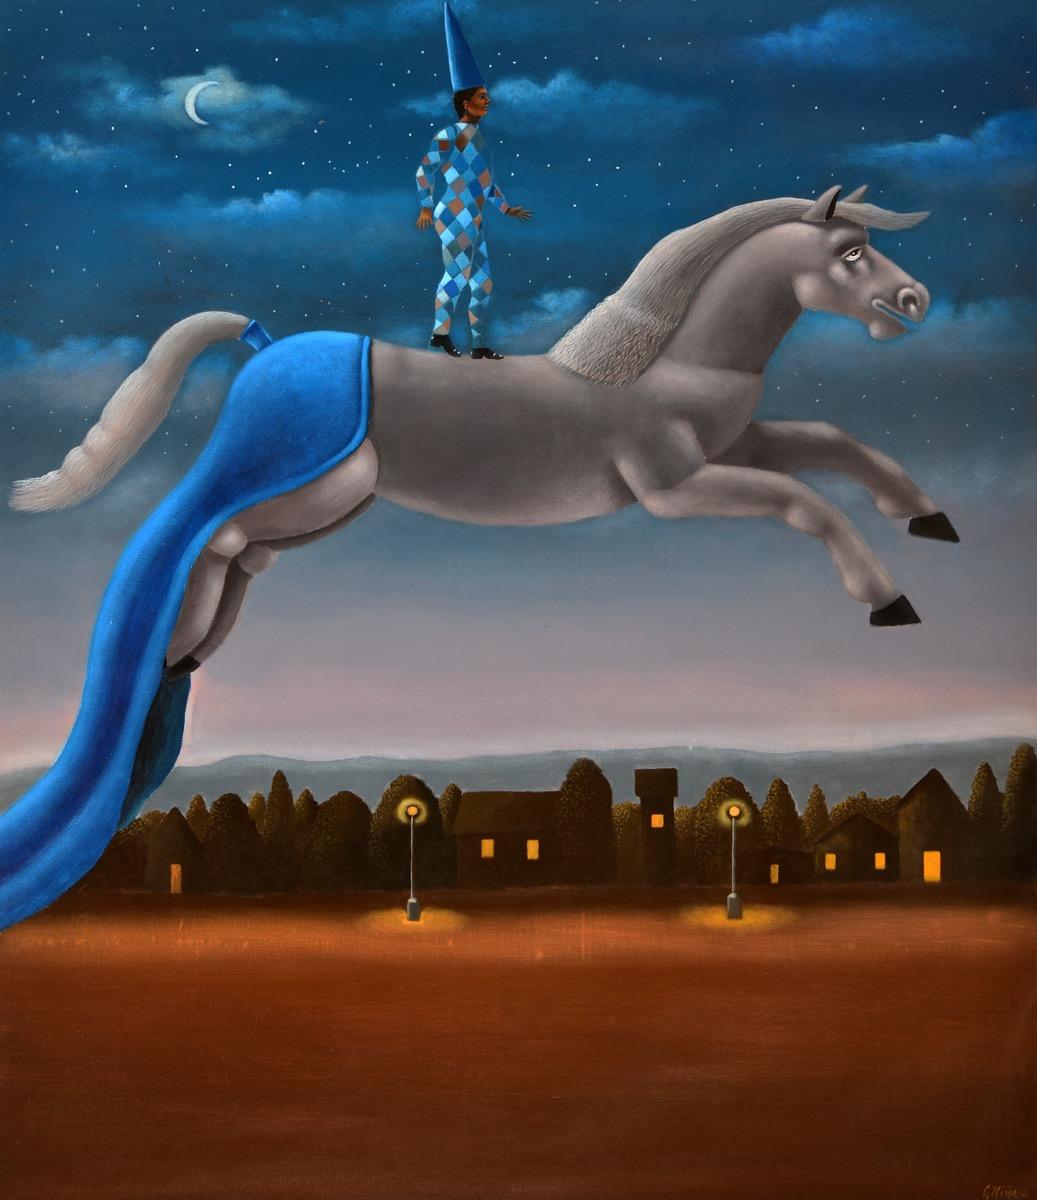 Carmelo Niño, Arlequin casi nocturno, 2012, Oil on canvas, 145 x 125 cm